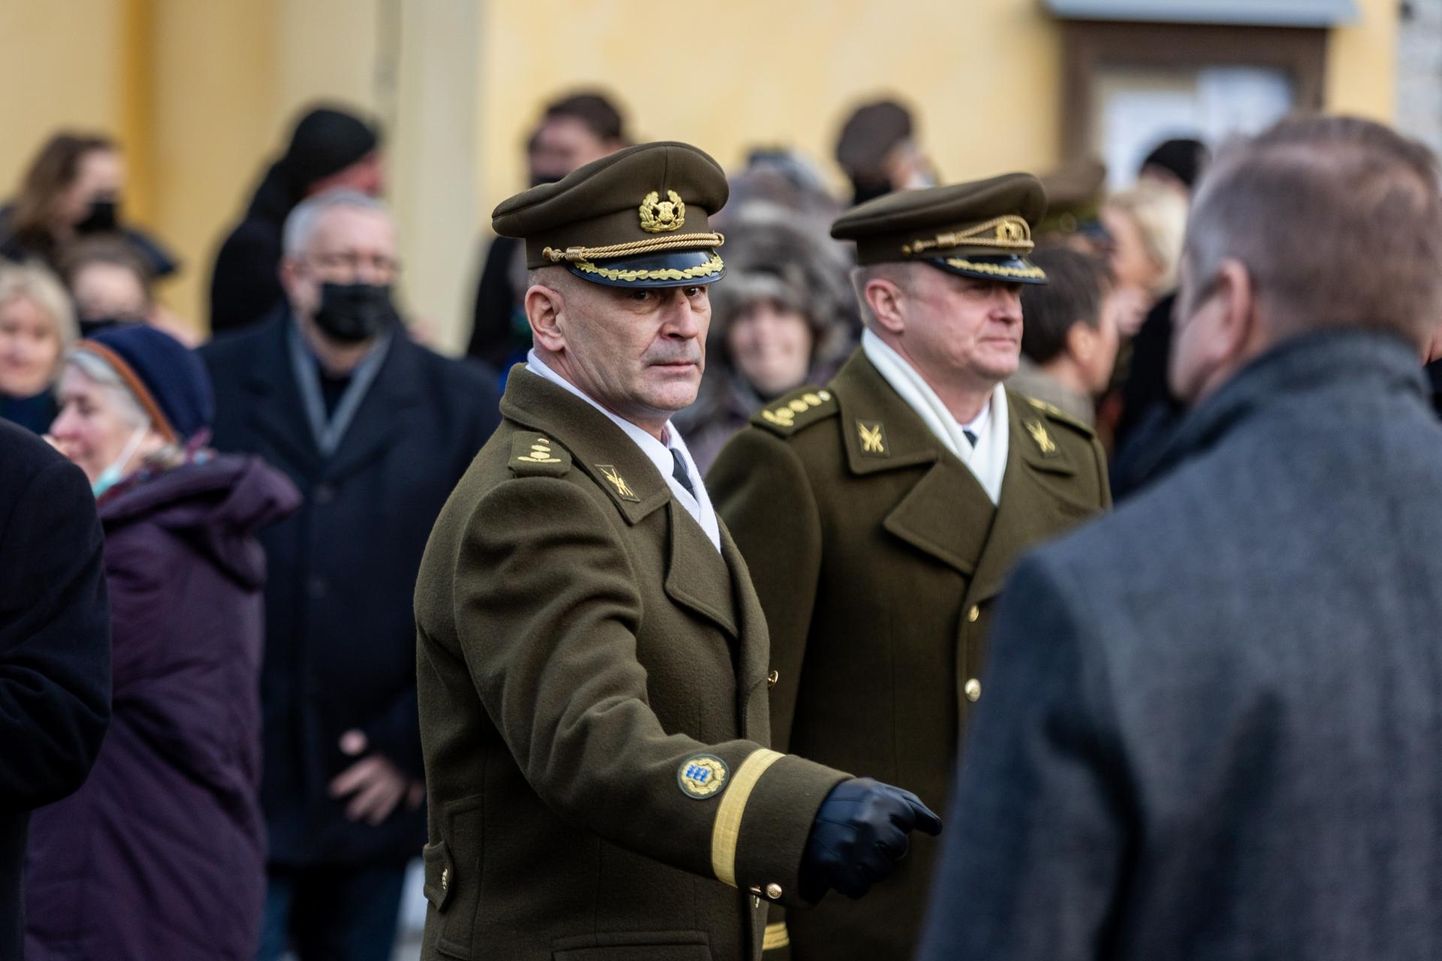 Eesti uus kaitseatašee Kiievis
kolonel Eero Kinnunen on suurte kogemustega kaitseväelane.